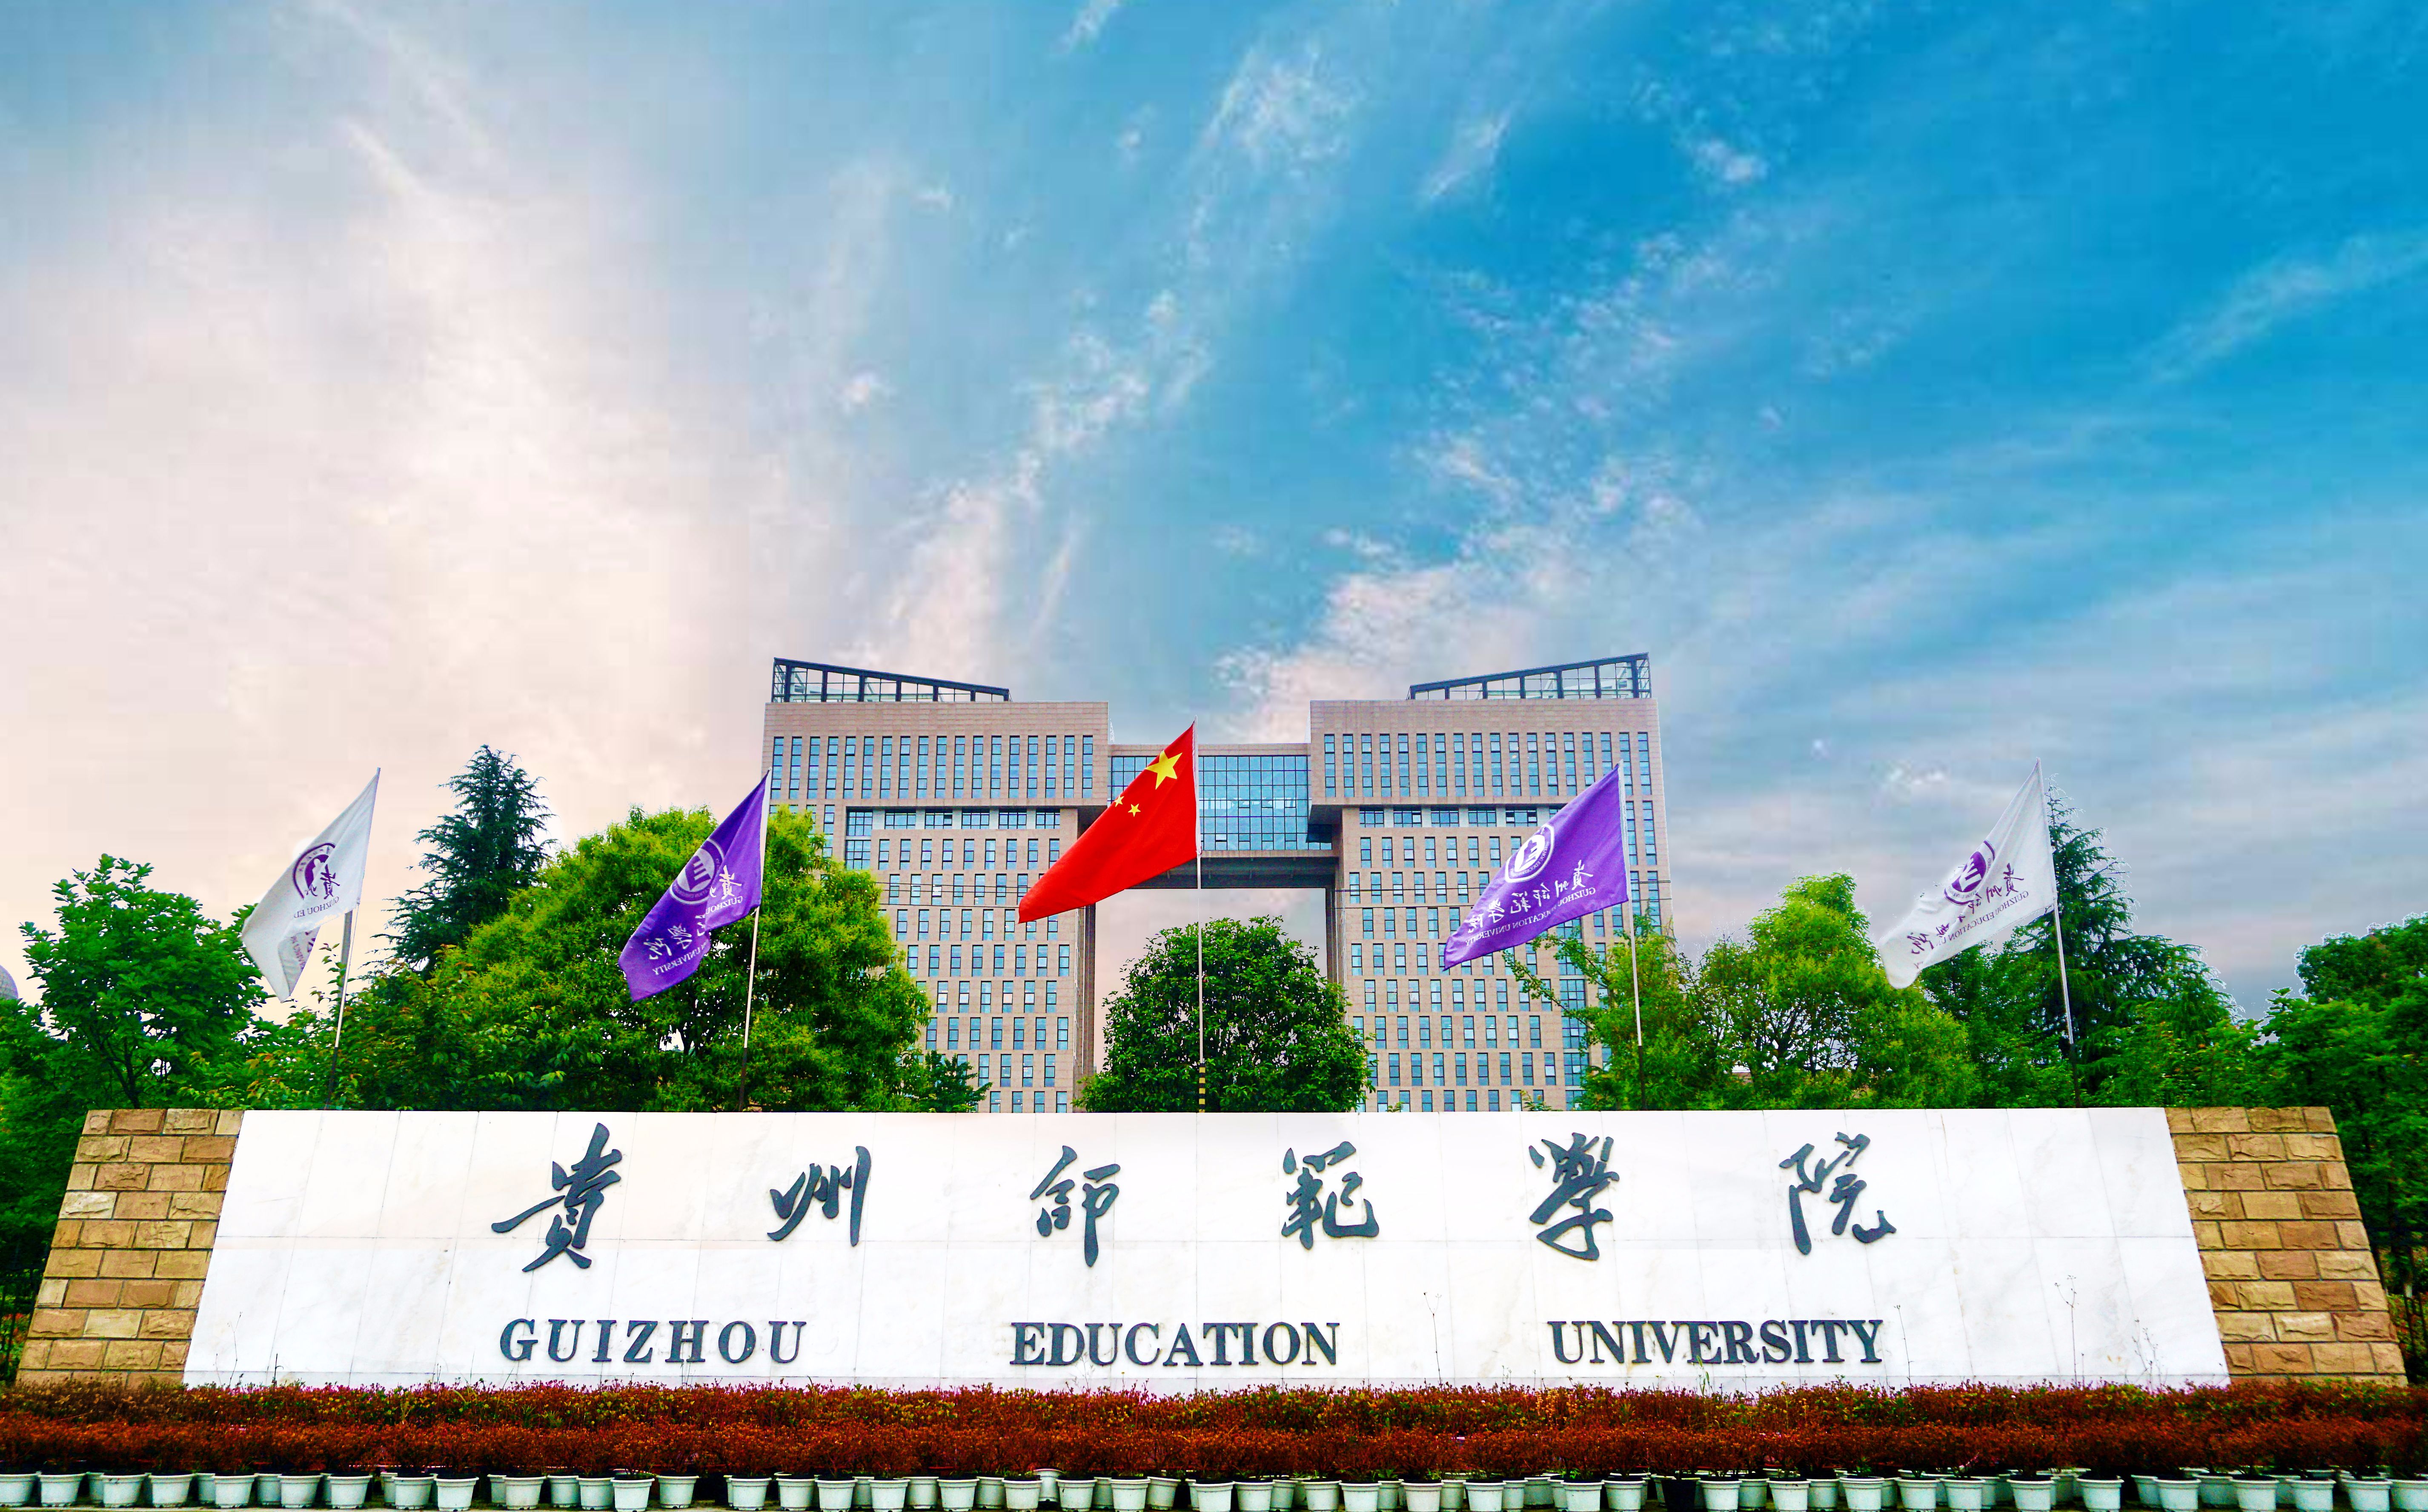 动静贵州:《贵州教育》2021新春贺岁——贵州师范学院